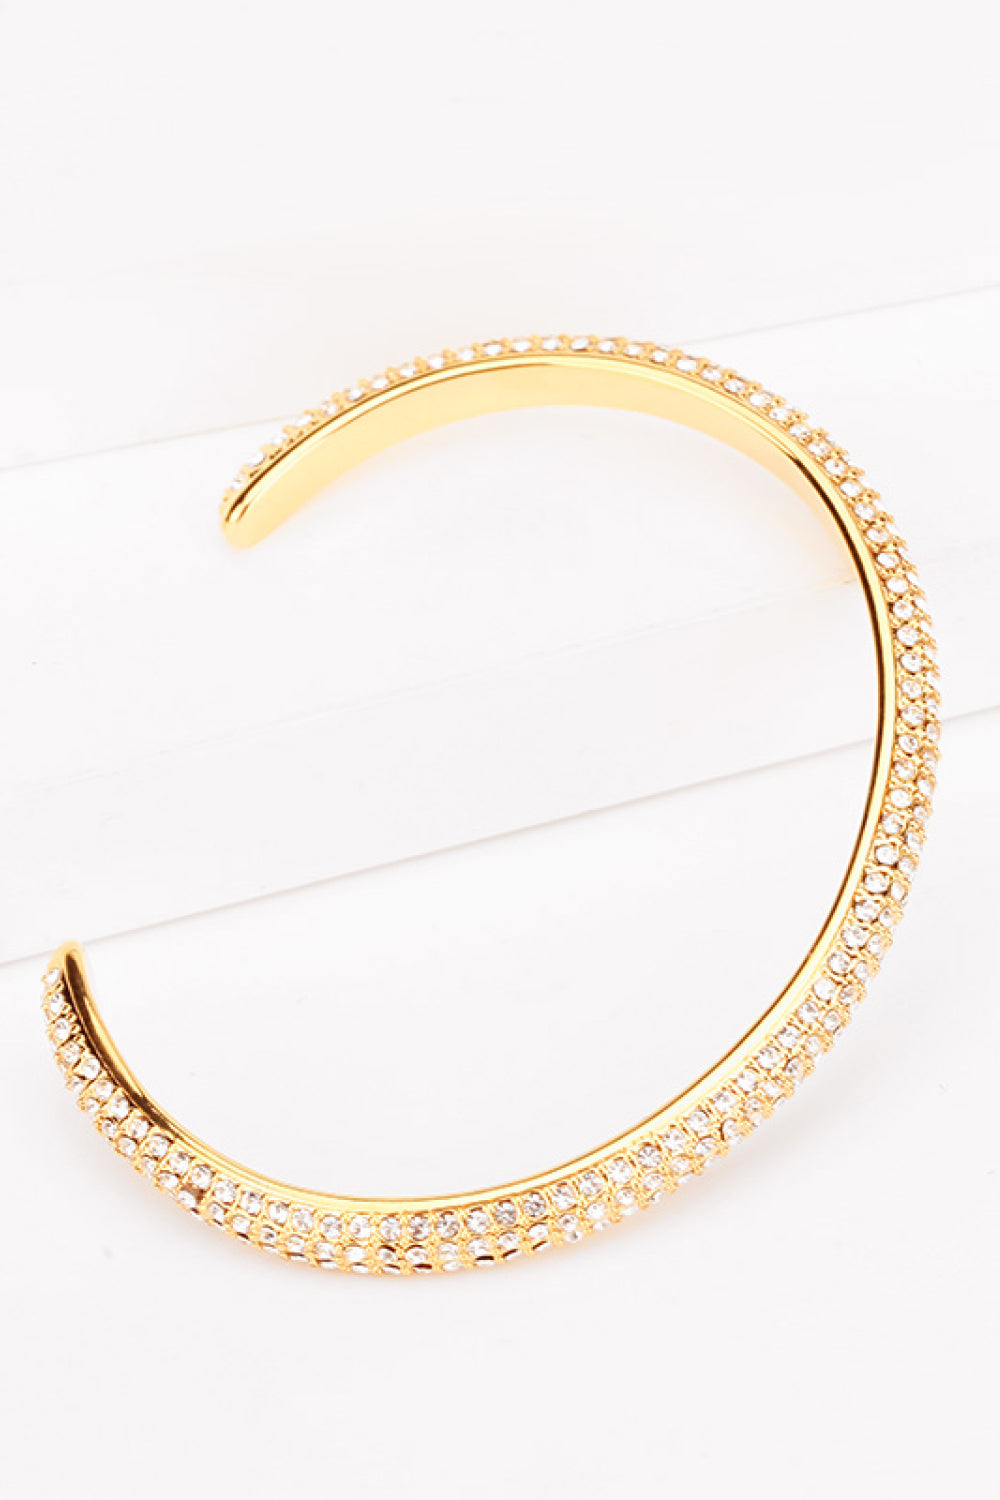 18K Gold-Plated Rhinestone Open Bracelet - Gold / One Size - Women’s Jewelry - Bracelets - 3 - 2024